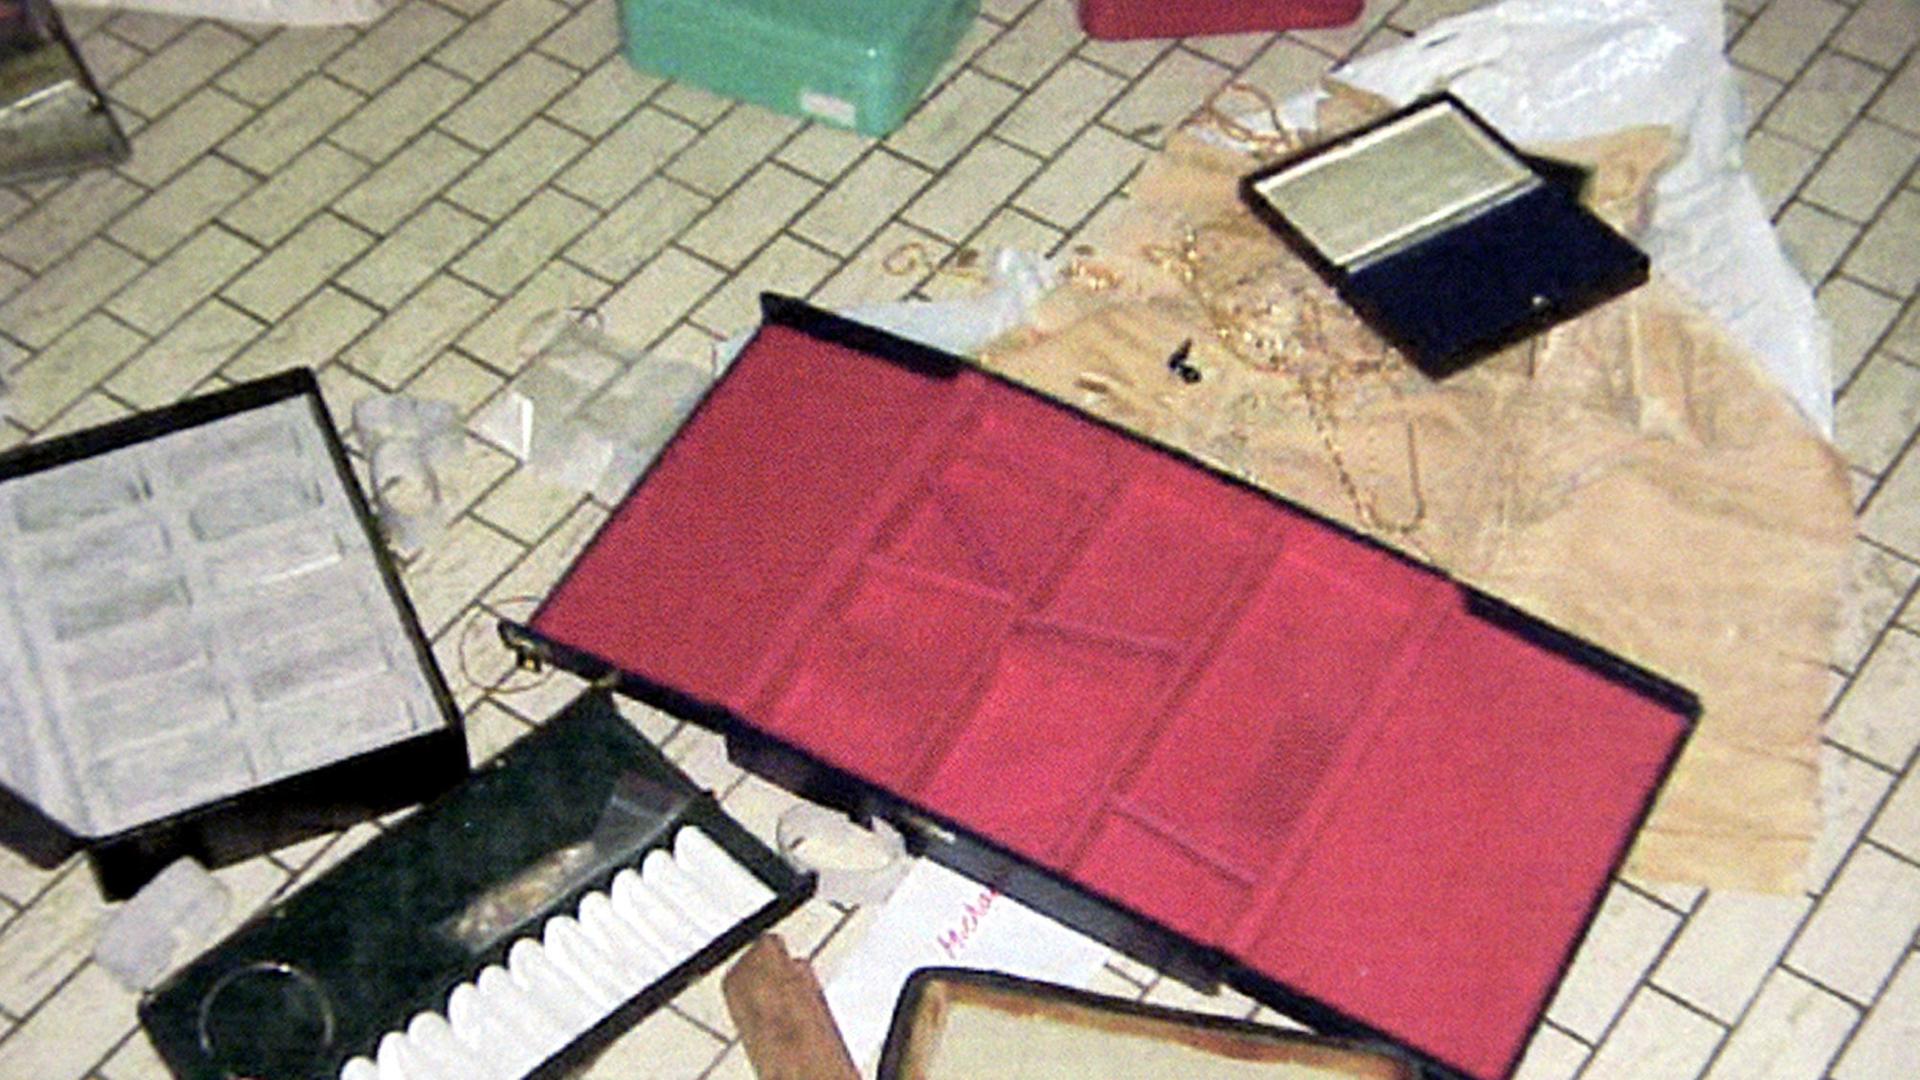 Auf dem Boden des Antwerp World Diamond Center liegen Schmuckschatullen und Geldkassetten nachdem dort Schmuck im Wert vieler Millionen Euro gestohlen wurde.